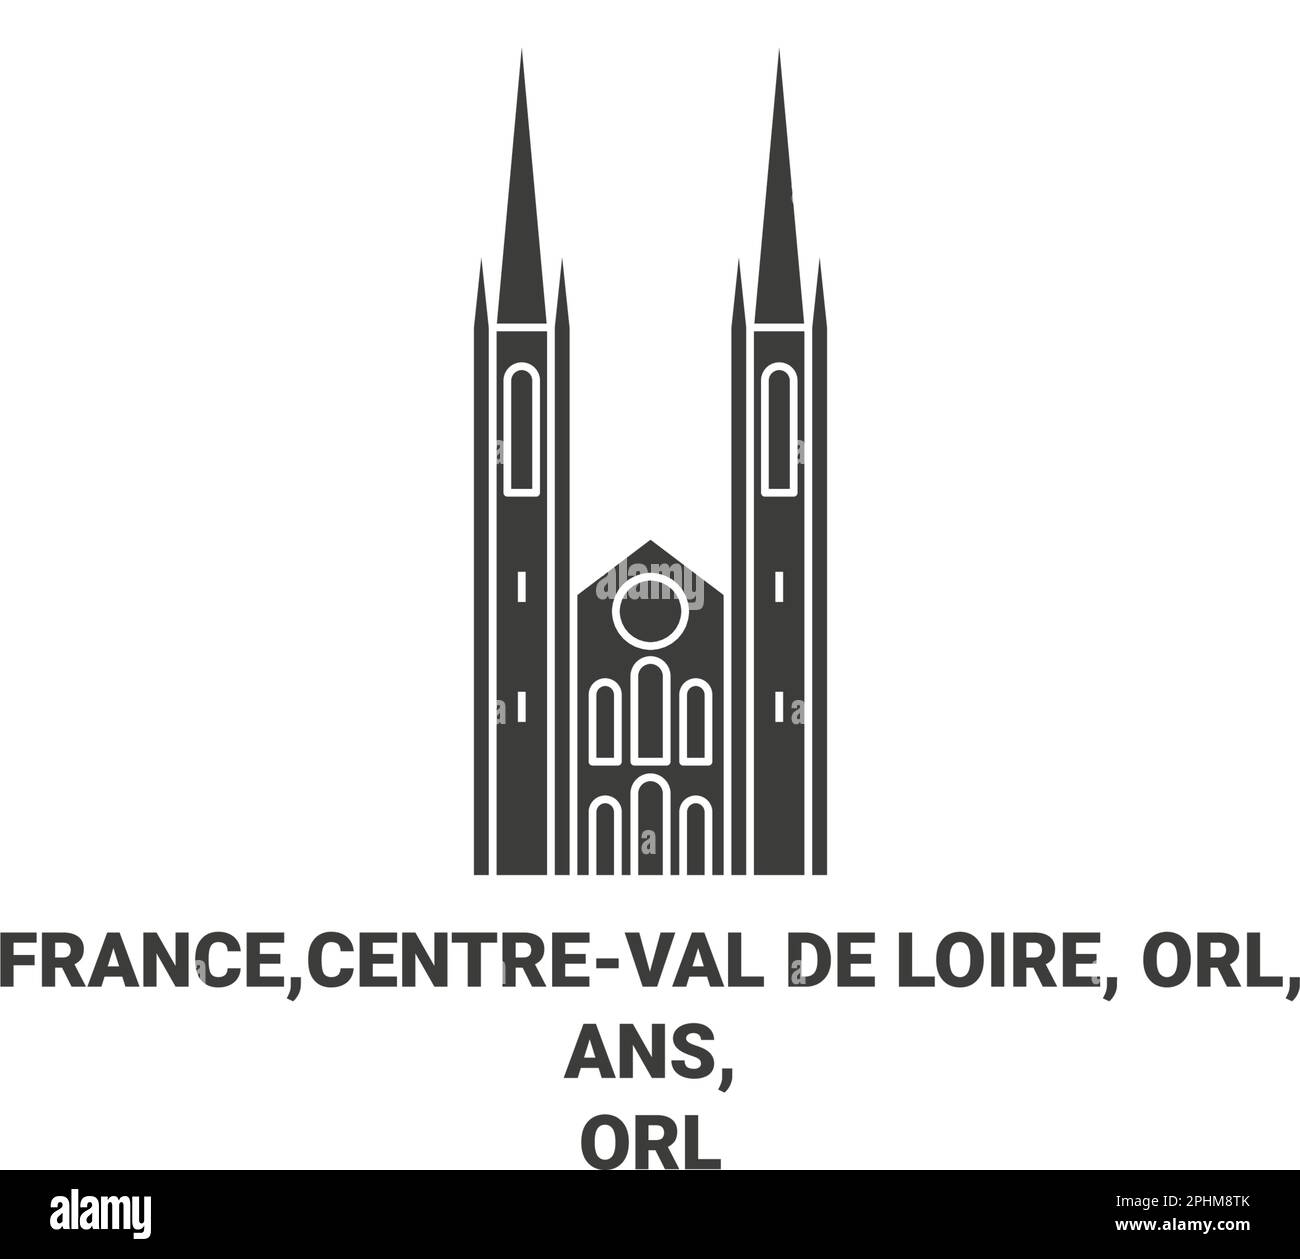 Frankreich, Centreval De Loire, Orl, ans, Orlans Kathedrale Reise Wahrzeichen Vektordarstellung Stock Vektor